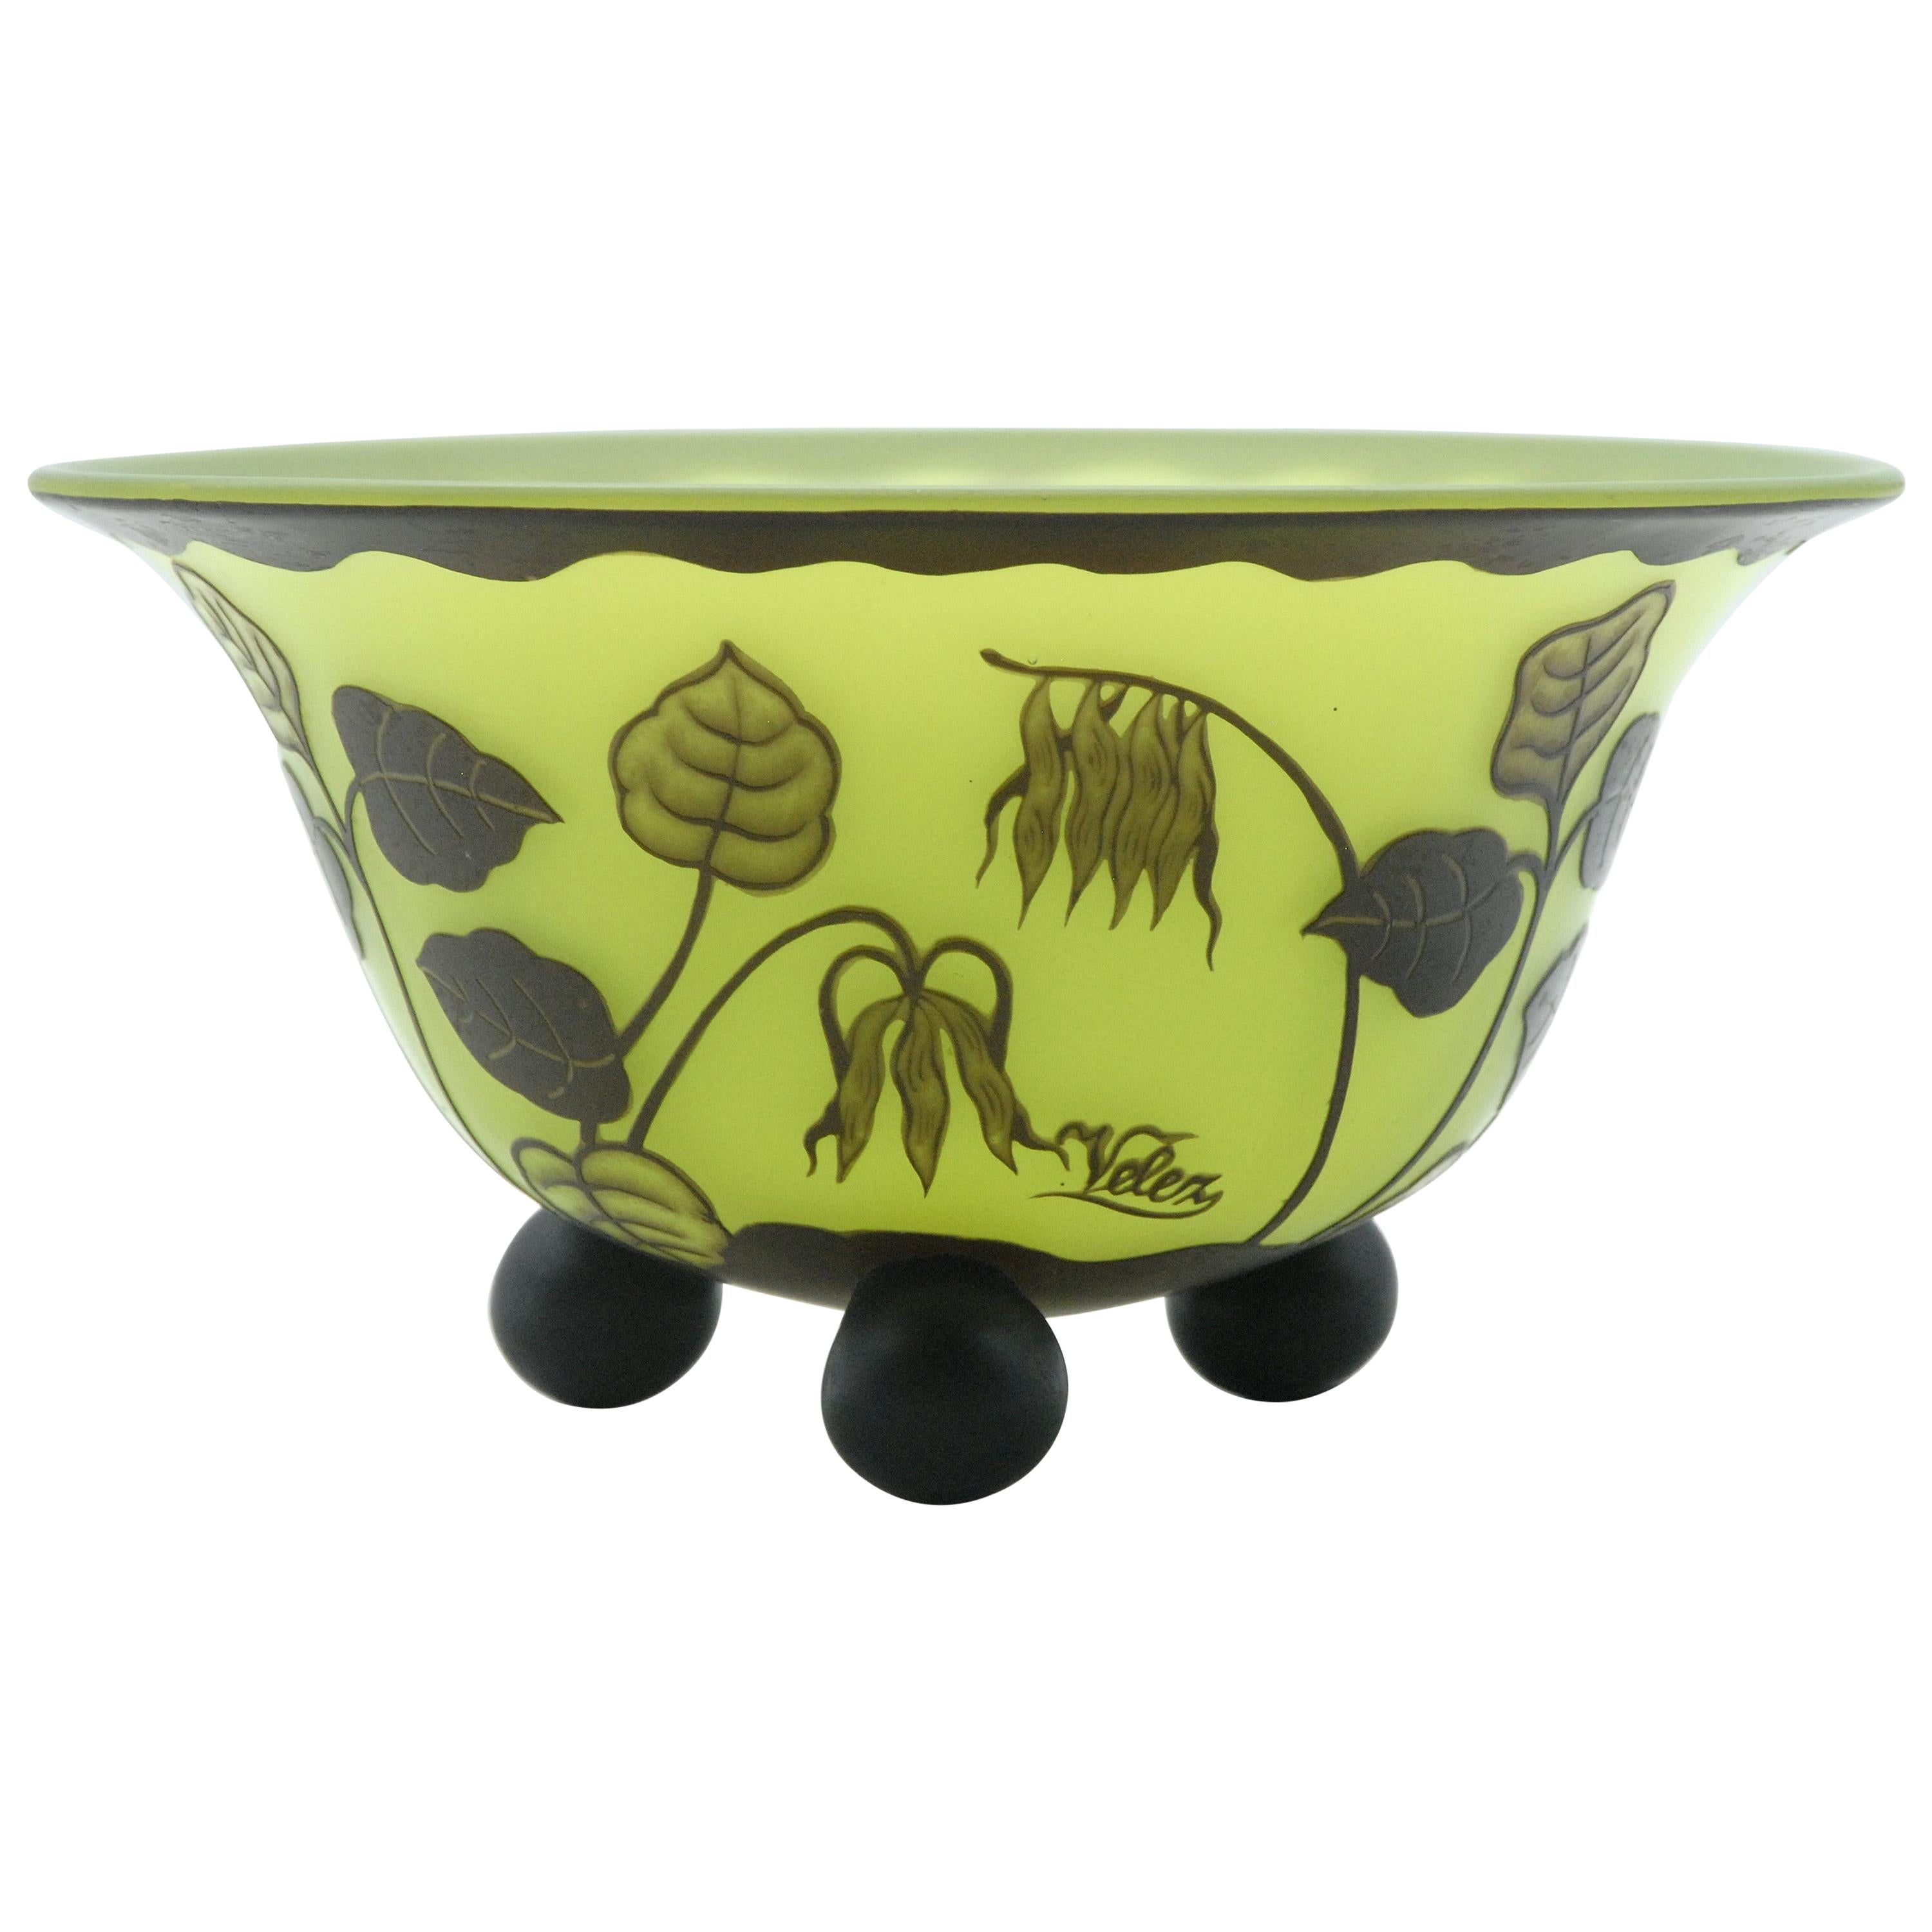 Loetz Green Cameo Glass Bowl Signed Velez, Austria